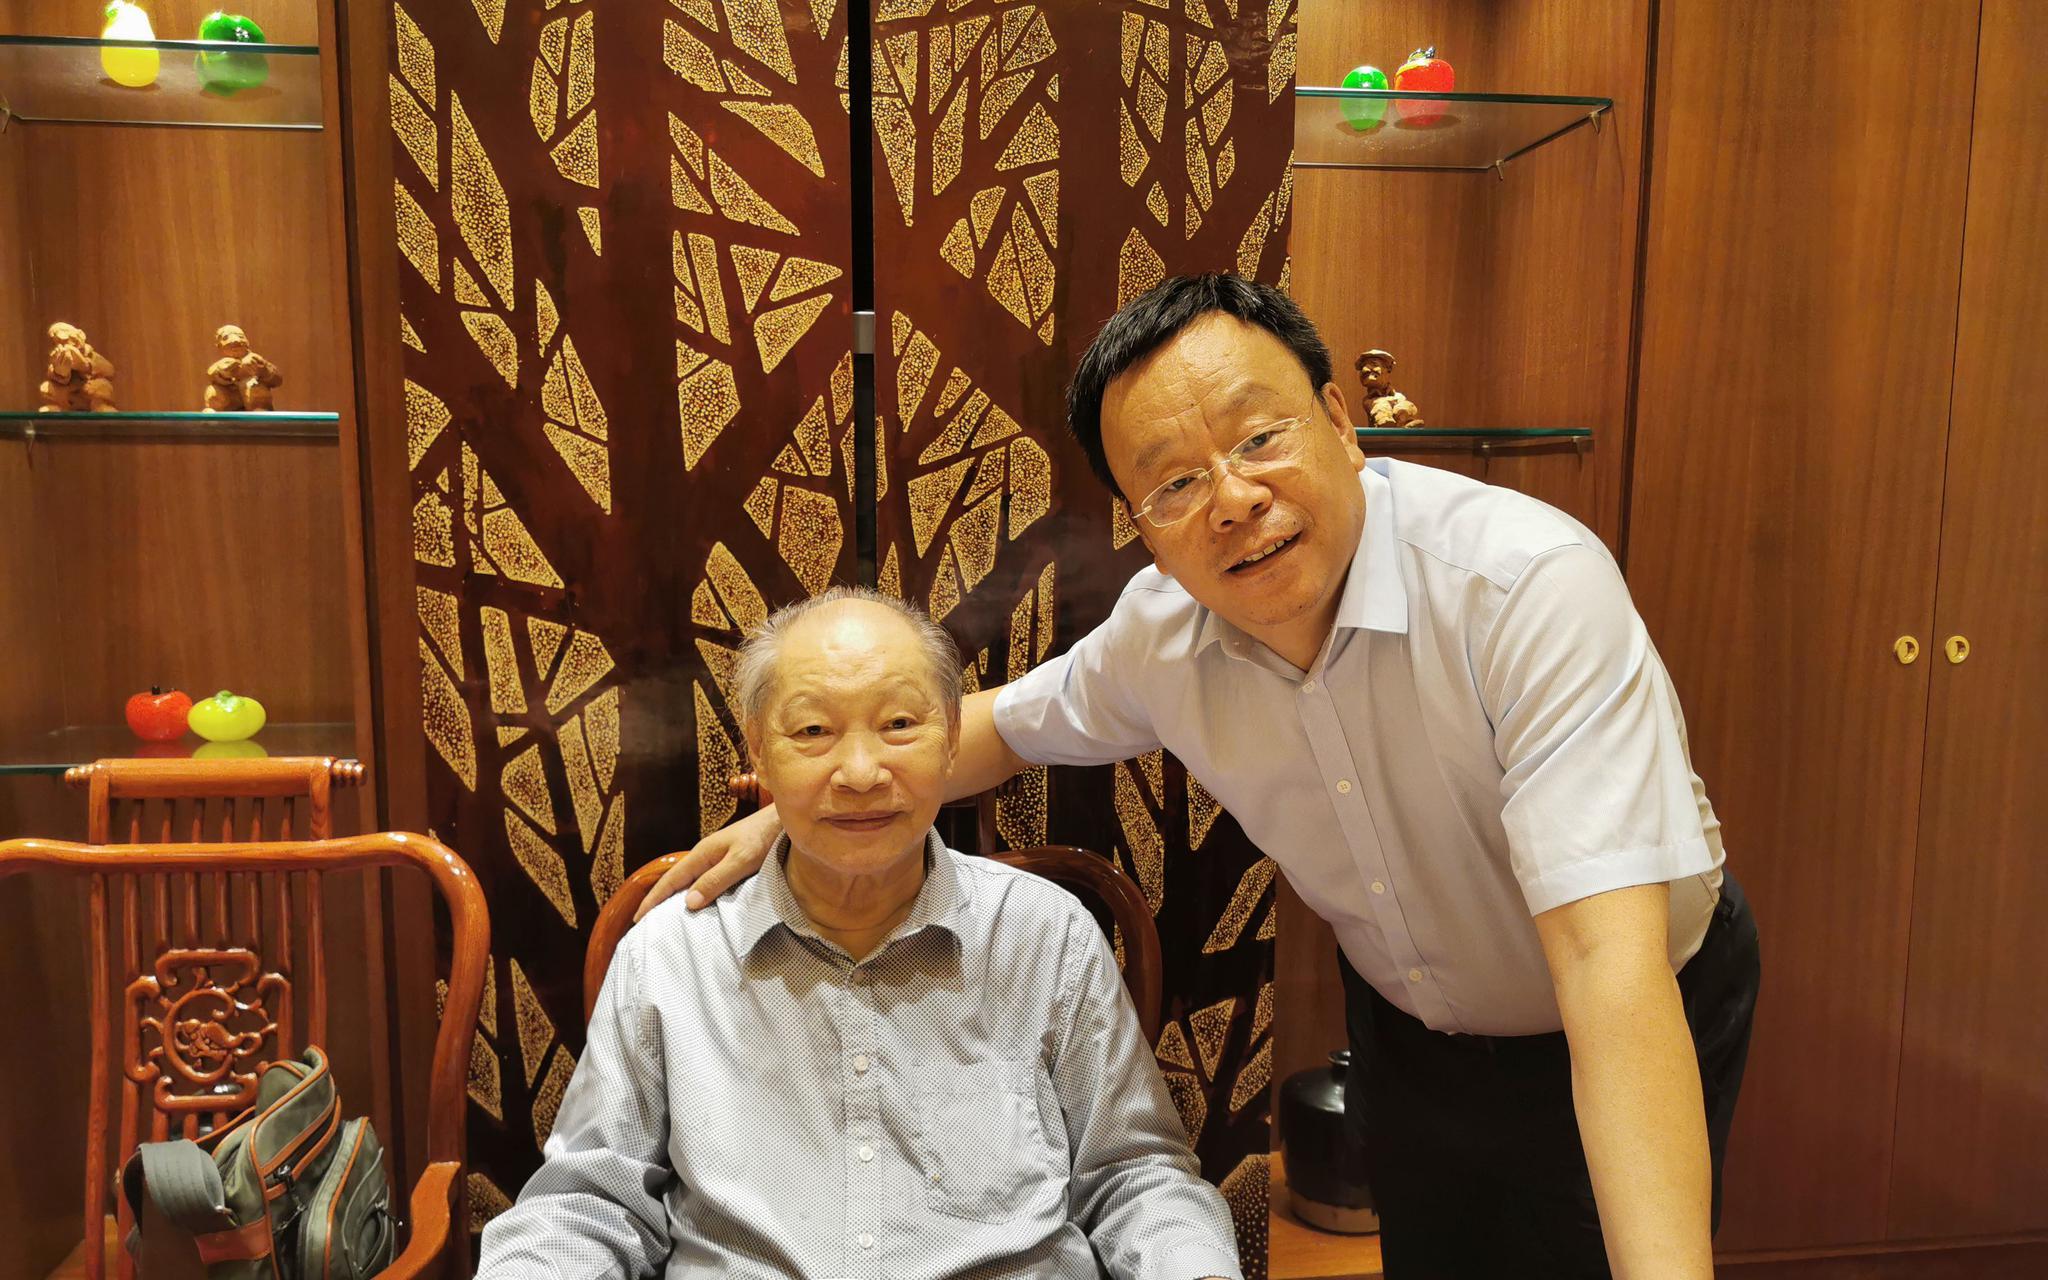  徐杰和自己的学生、中国政法大学副校长时建中合影。受访者供图